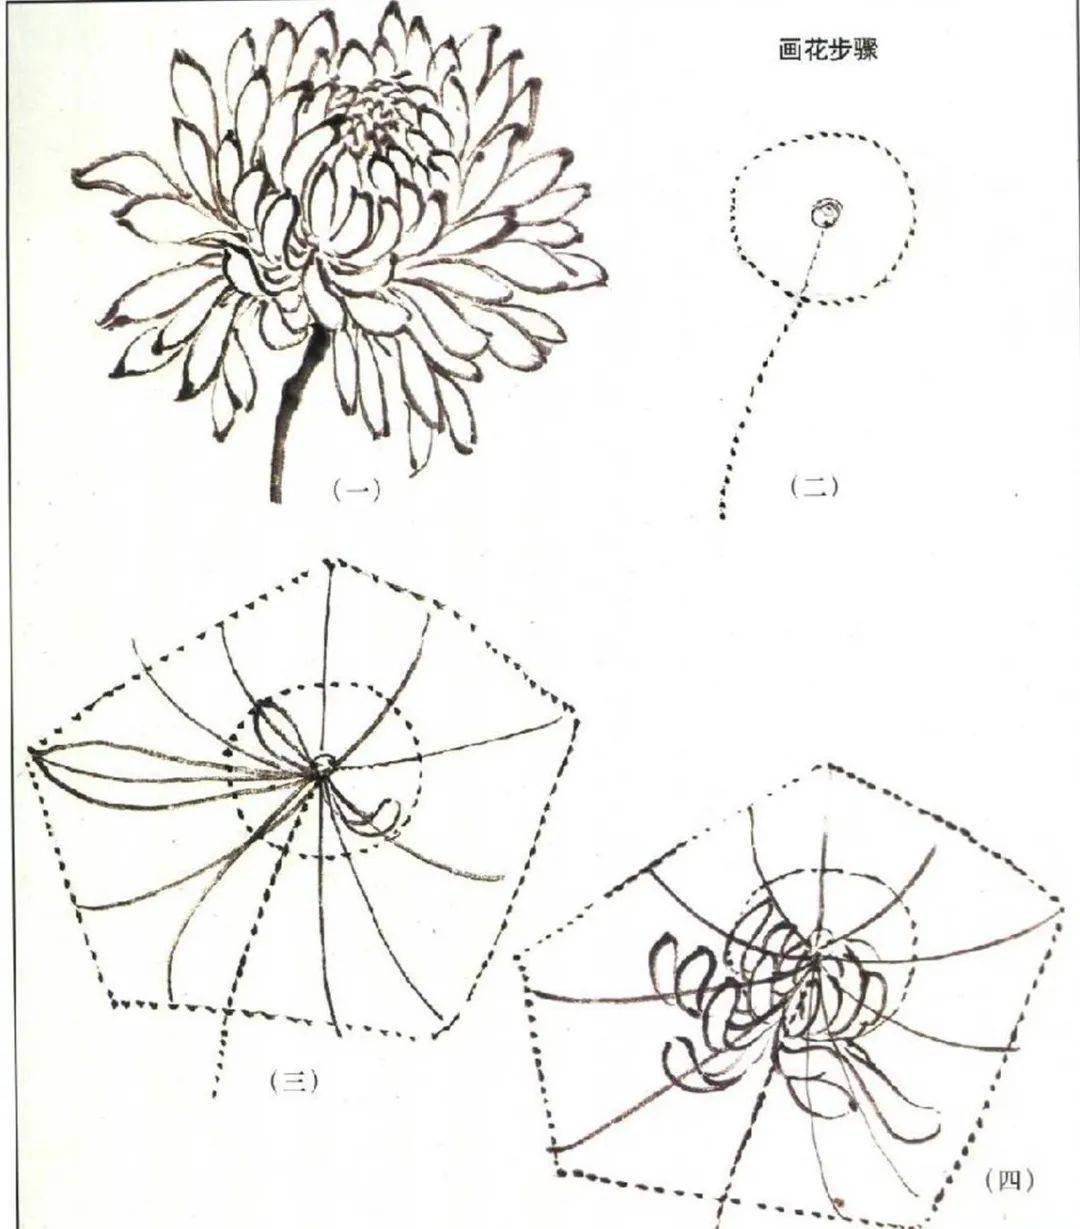 菊花的结构 图解图片